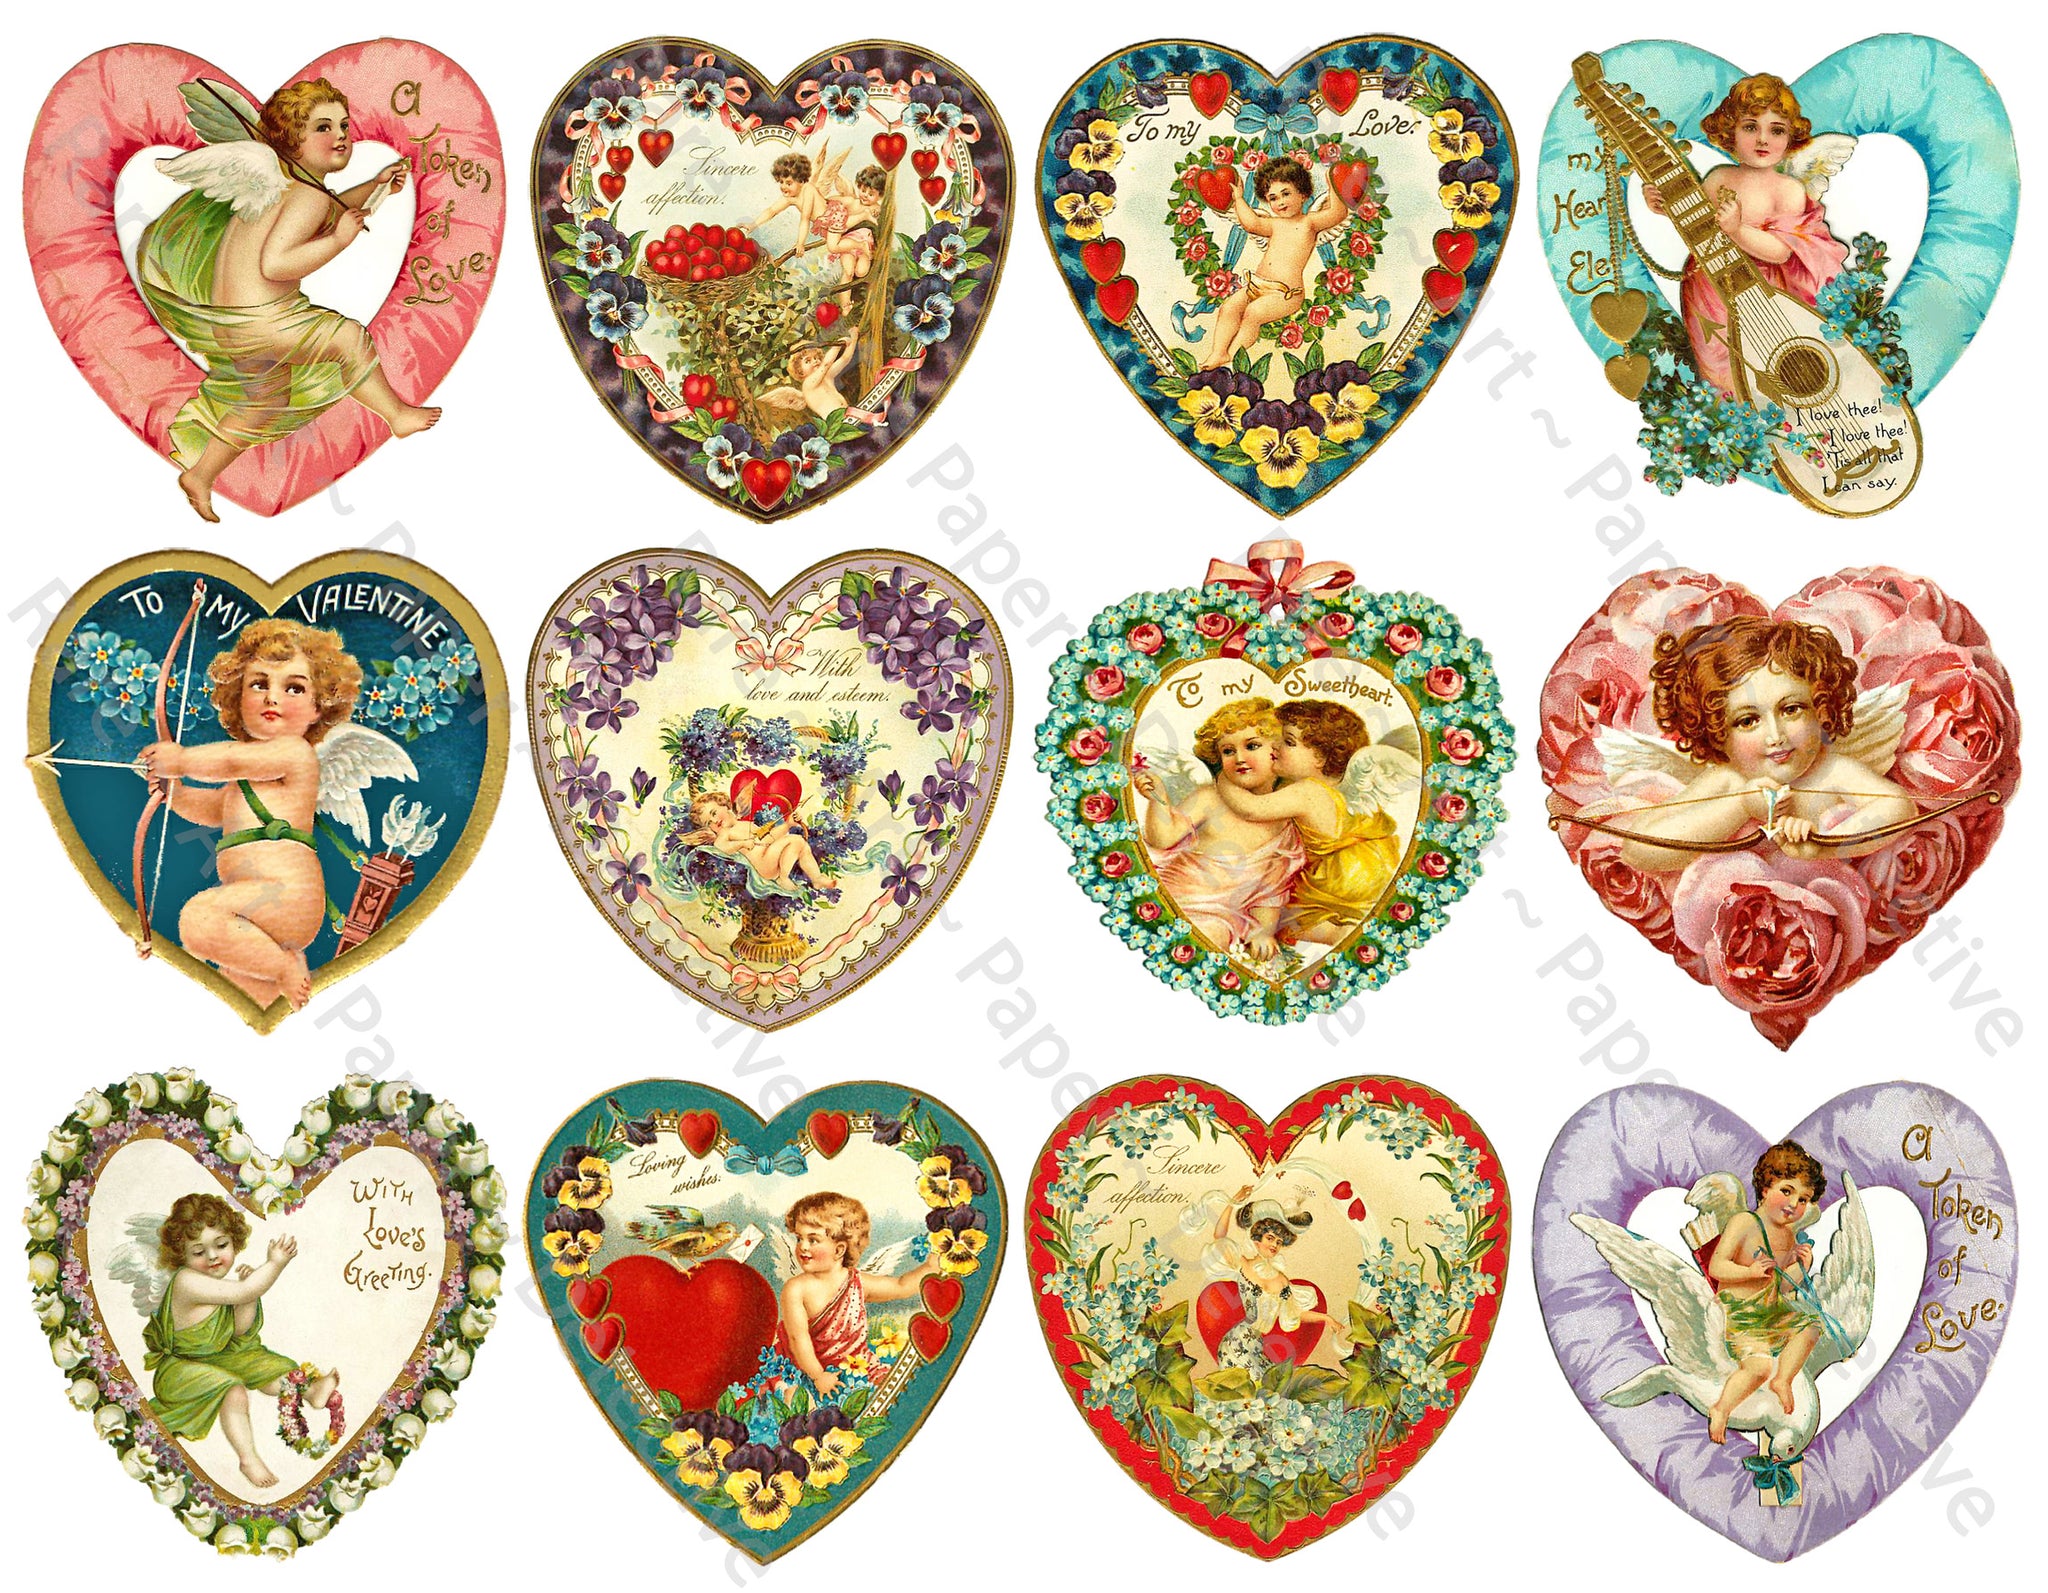 Valentine Stickers